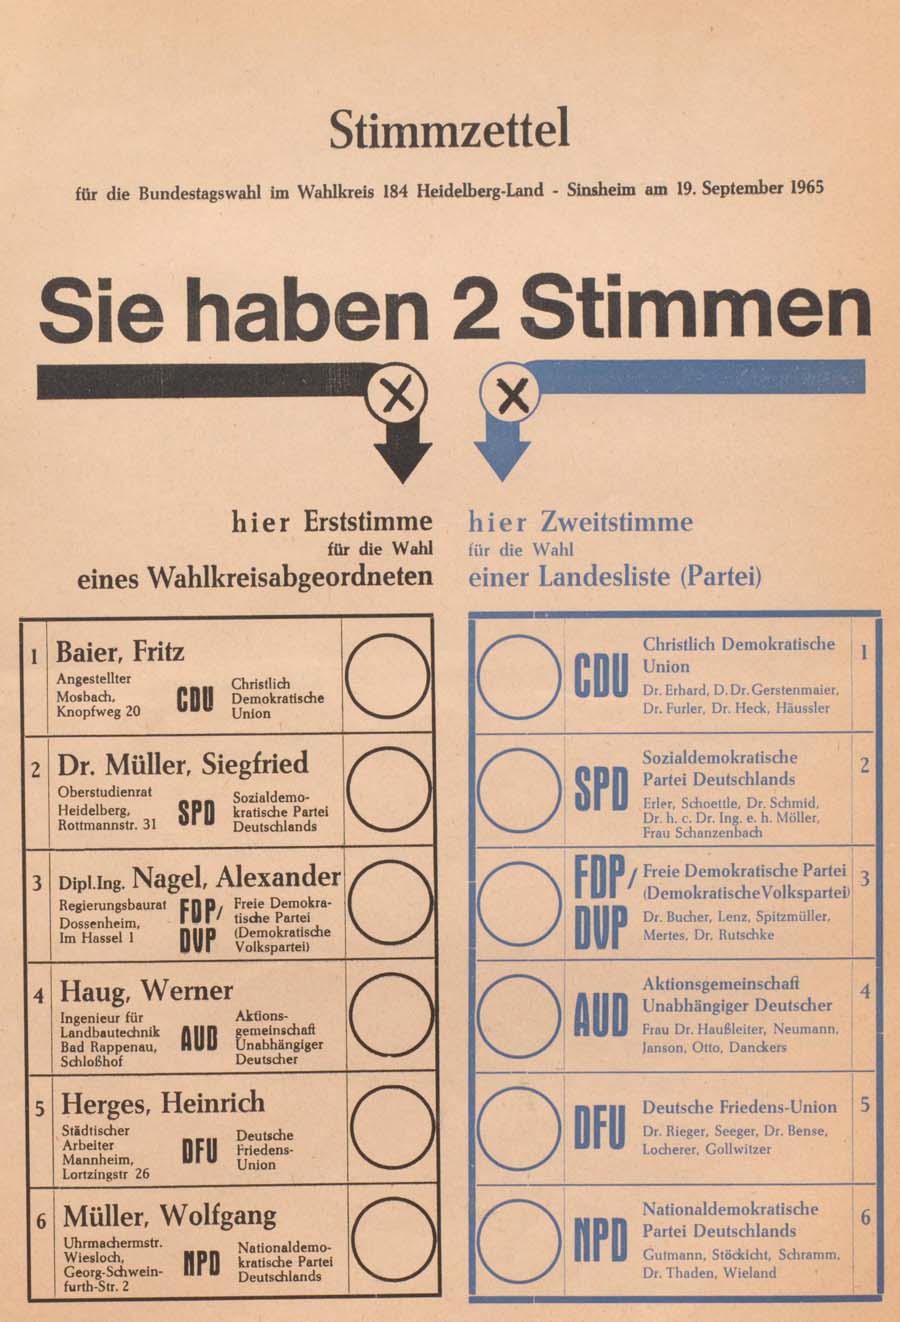 Bundestagswahl 2017